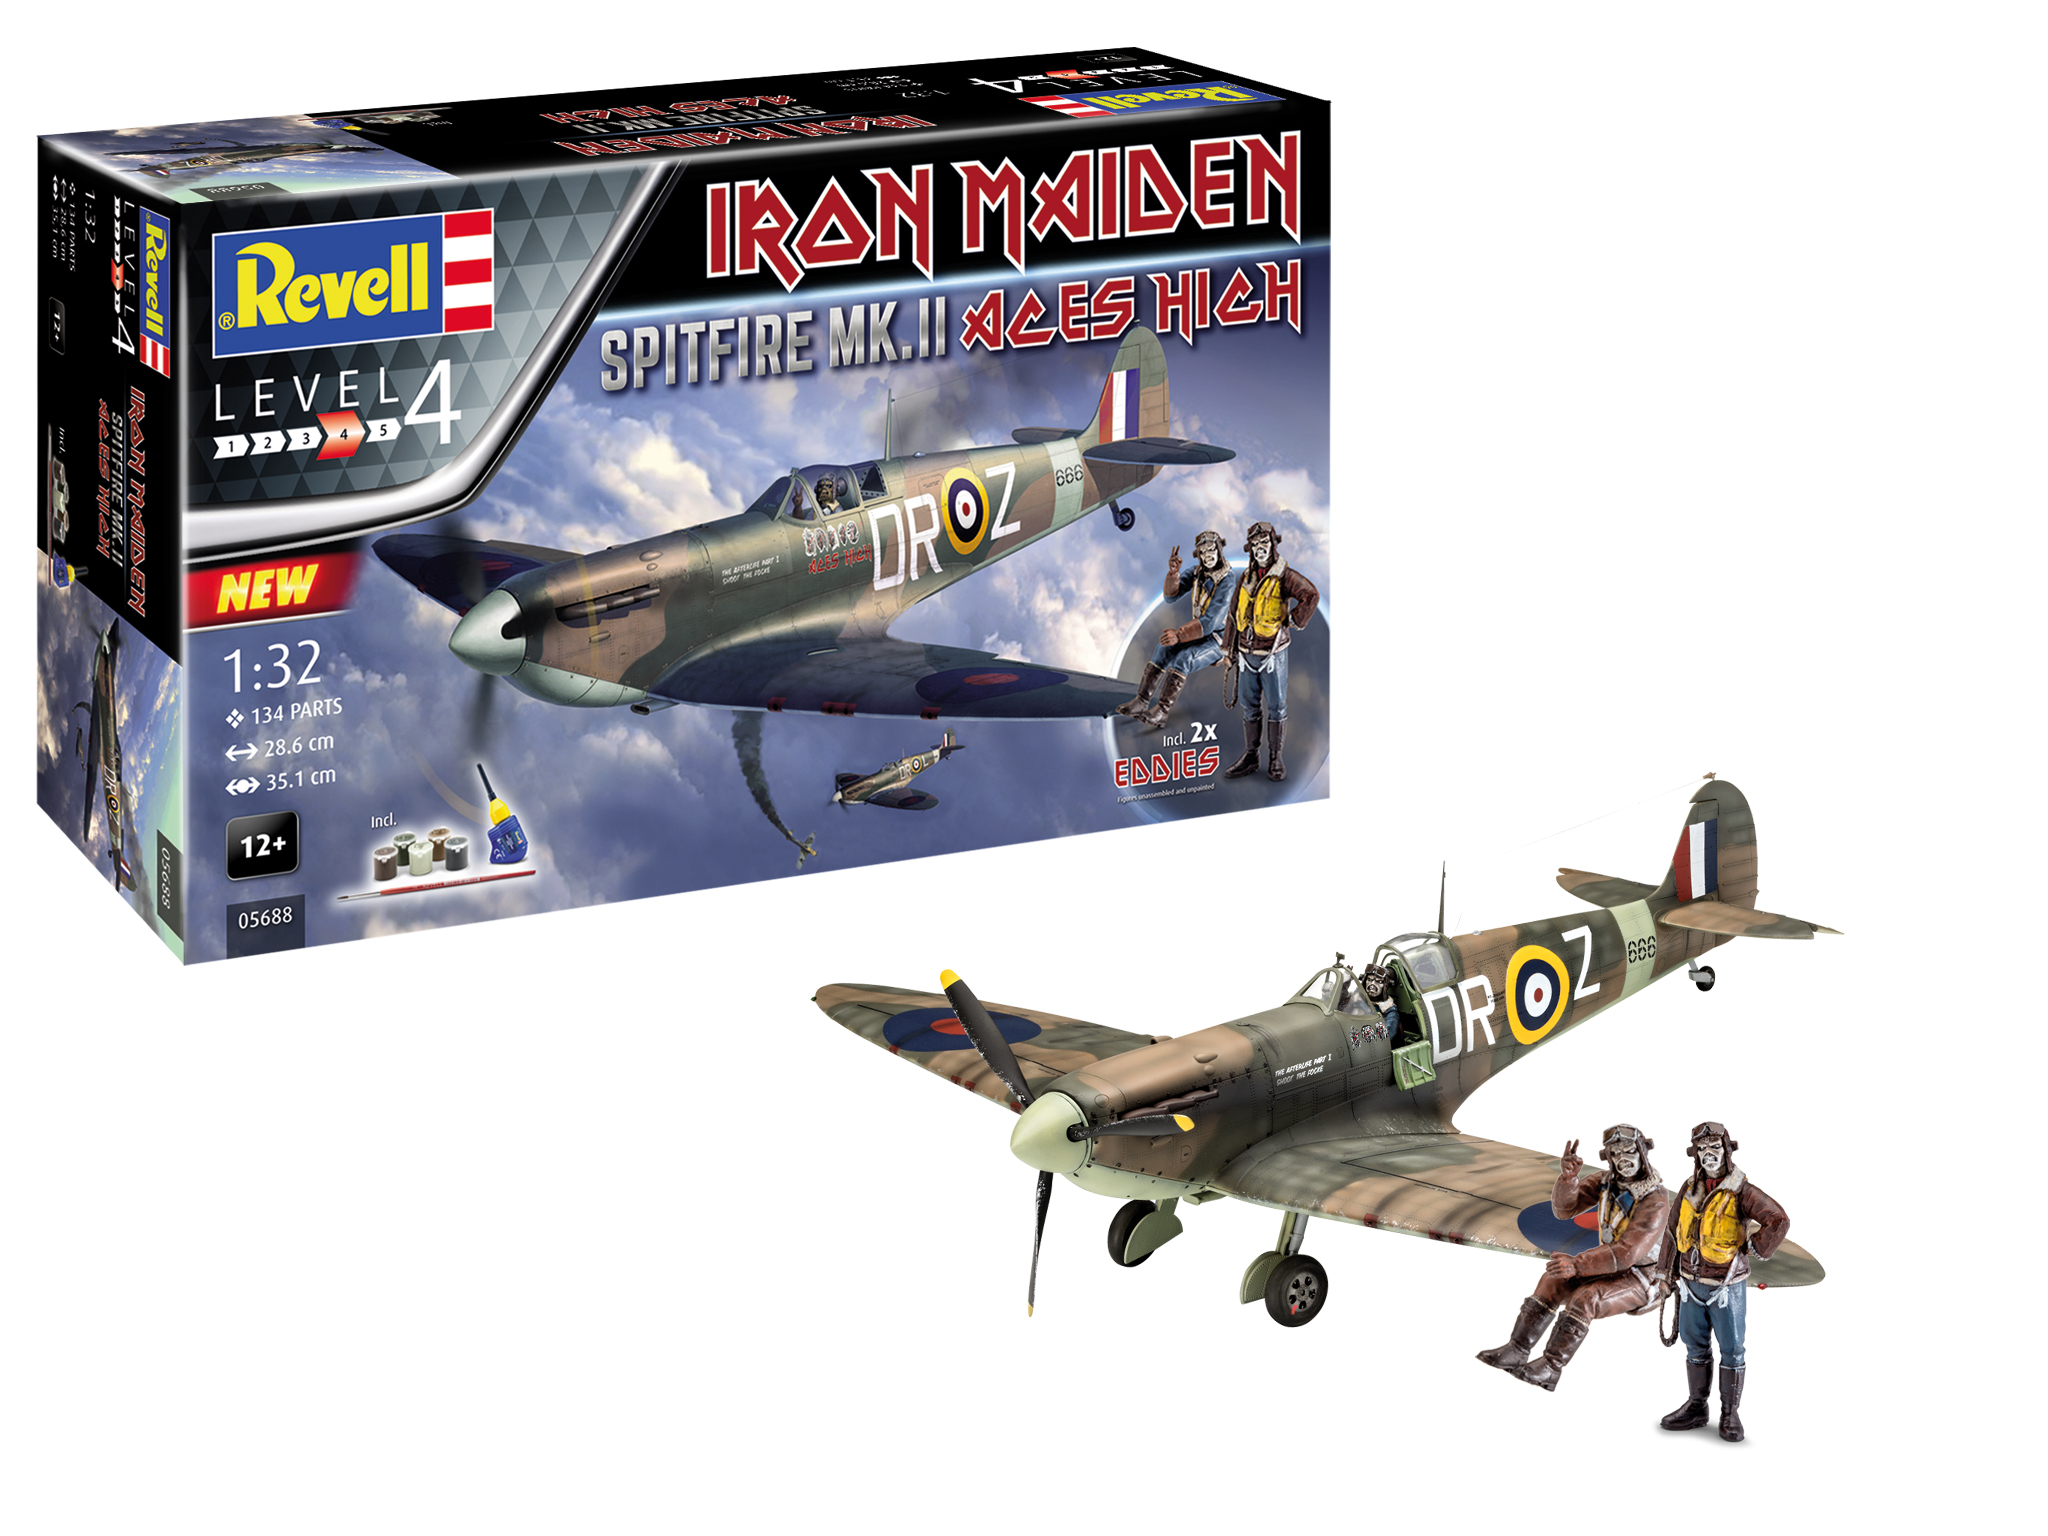 Revell Set Spitfire Mk.II "Aces High" Iron Maiden 1:32 bouwpakket met lijm en verf Toemen Modelsport